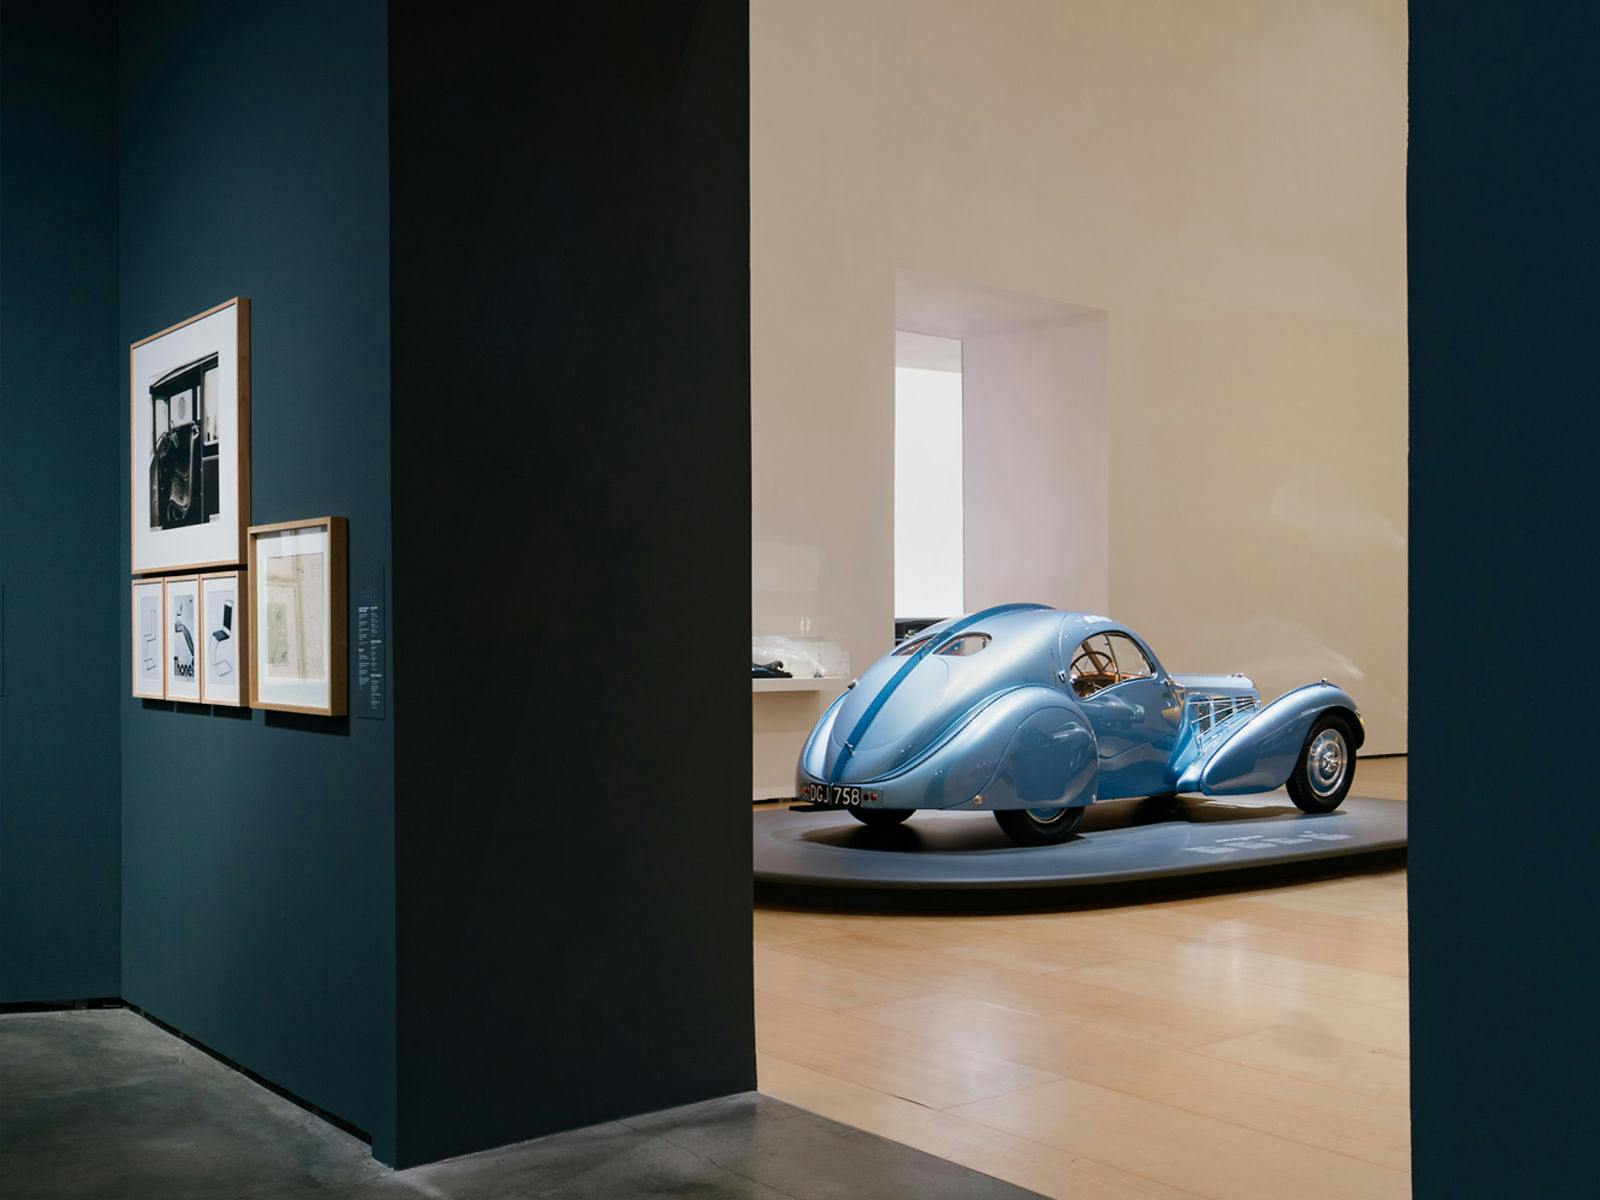 La Bugatti type 57 SC Atlantic, présentée dans la galerie "Sculptures" est située à côté de la célèbre sculpture "Walking Panther" de Rembrandt Bugatti.